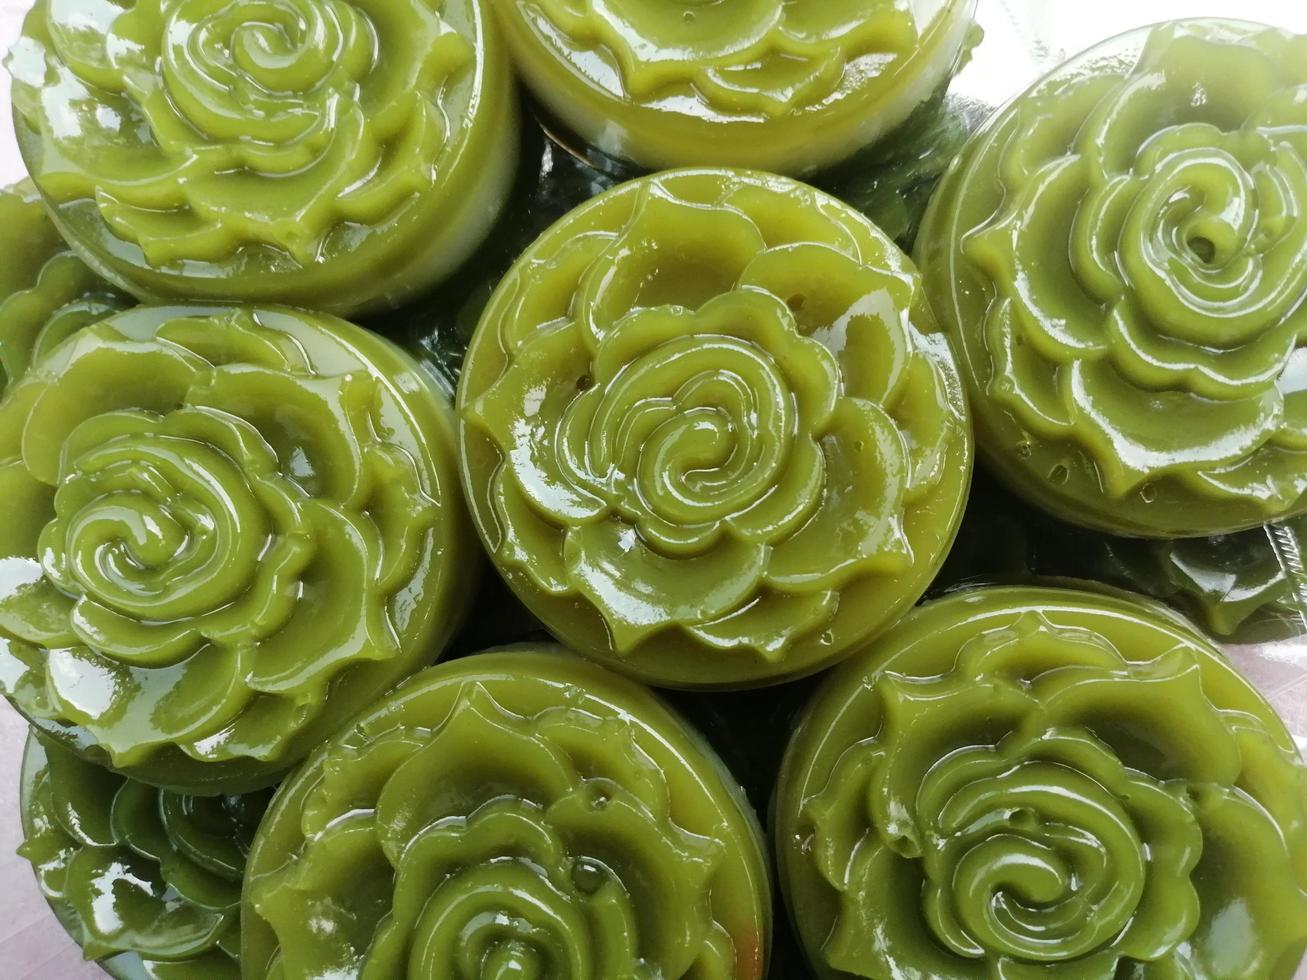 dessert thaï alimentaire vert rond motif de fleurs photo